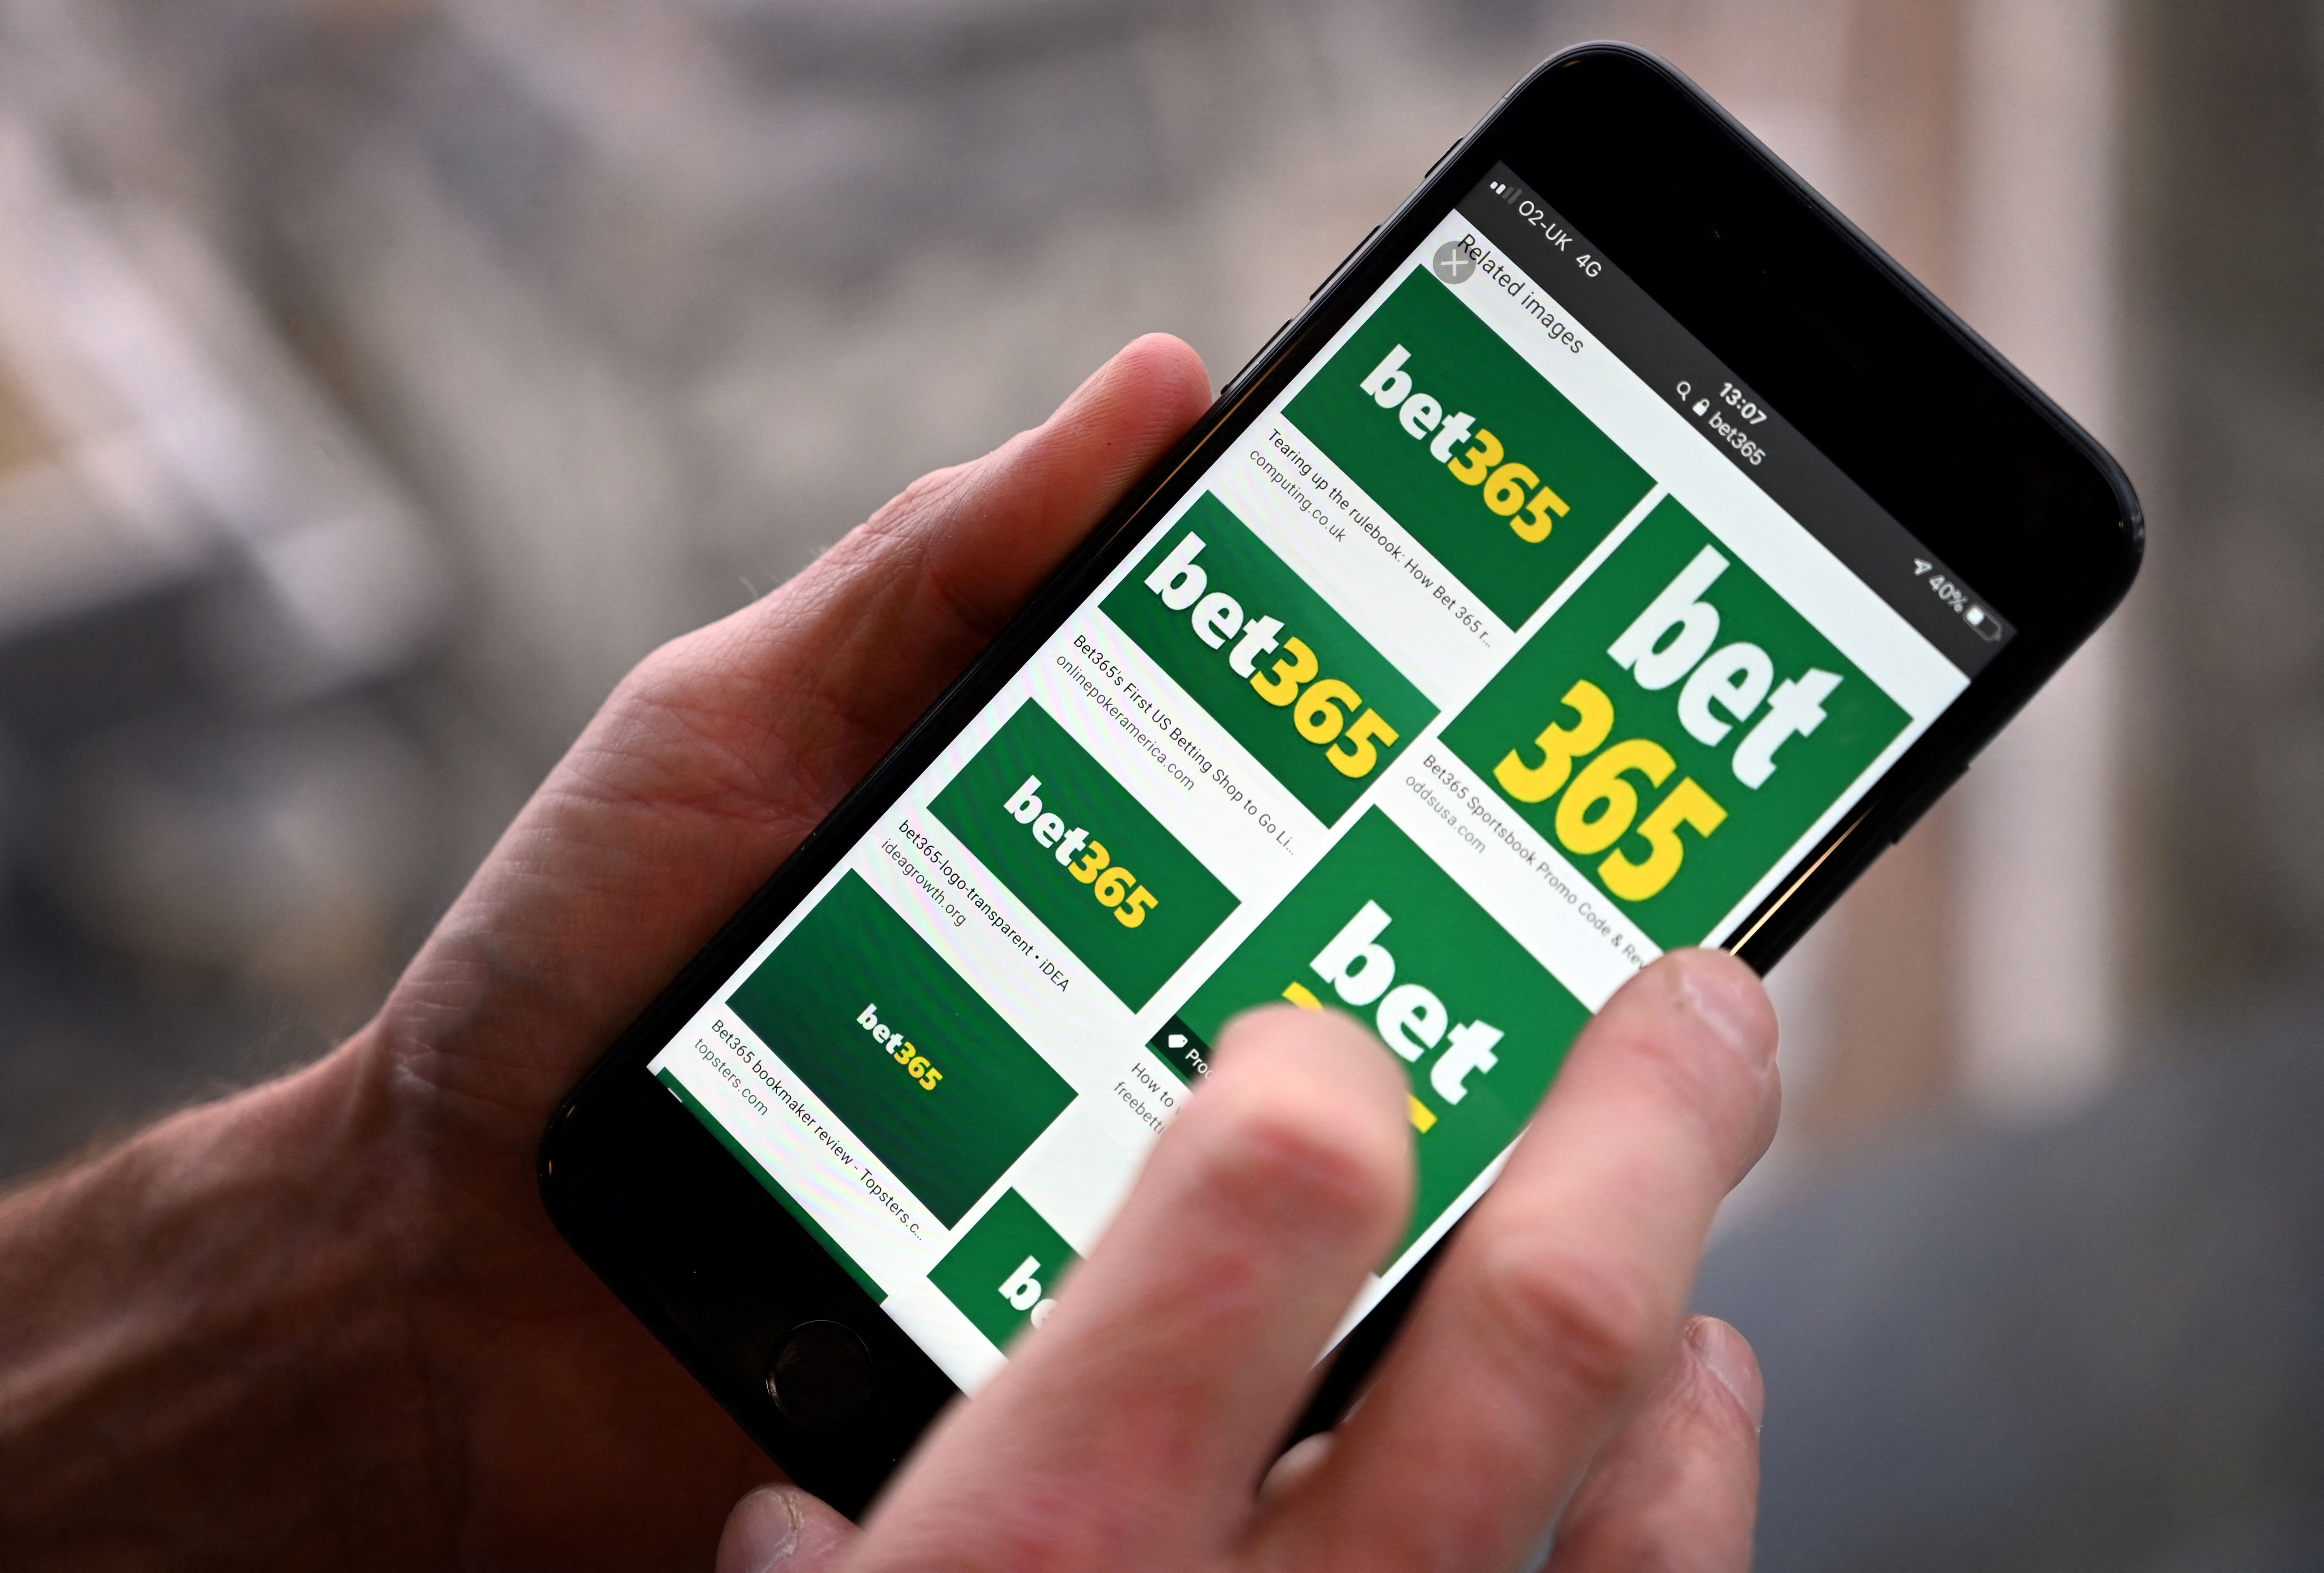 Cricket Exchange Betting App - The Six Figure Challenge